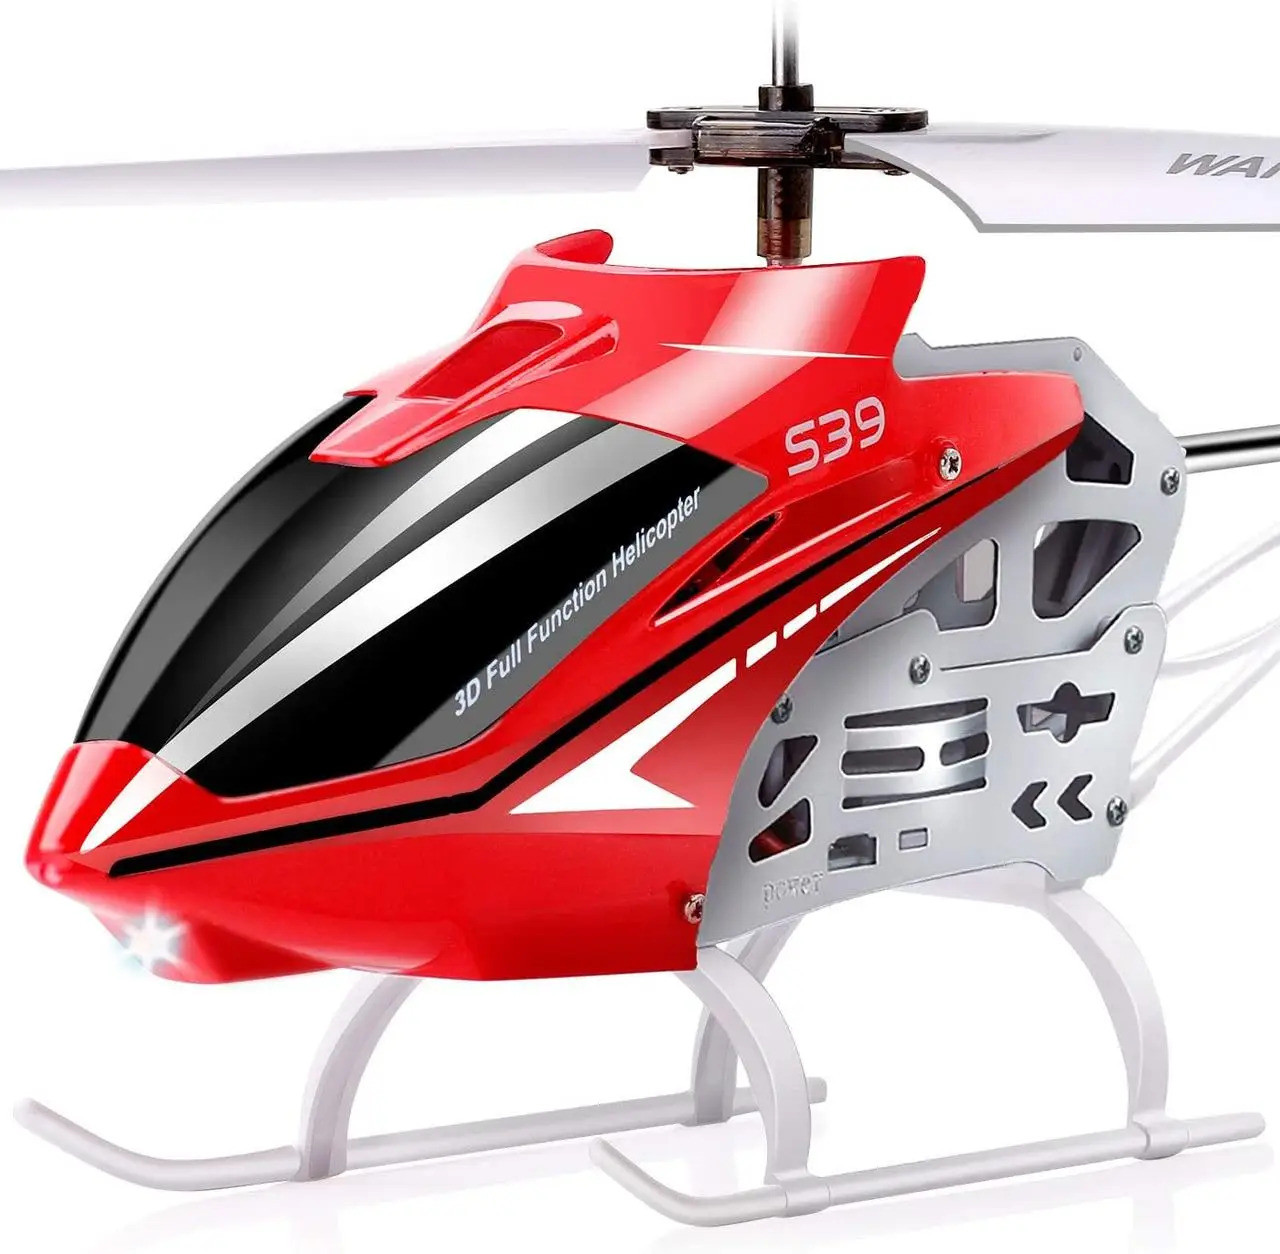 Радіокерований вертоліт SYMA S39 з 3,5-канальним зв'язком, Amazon, Німеччина